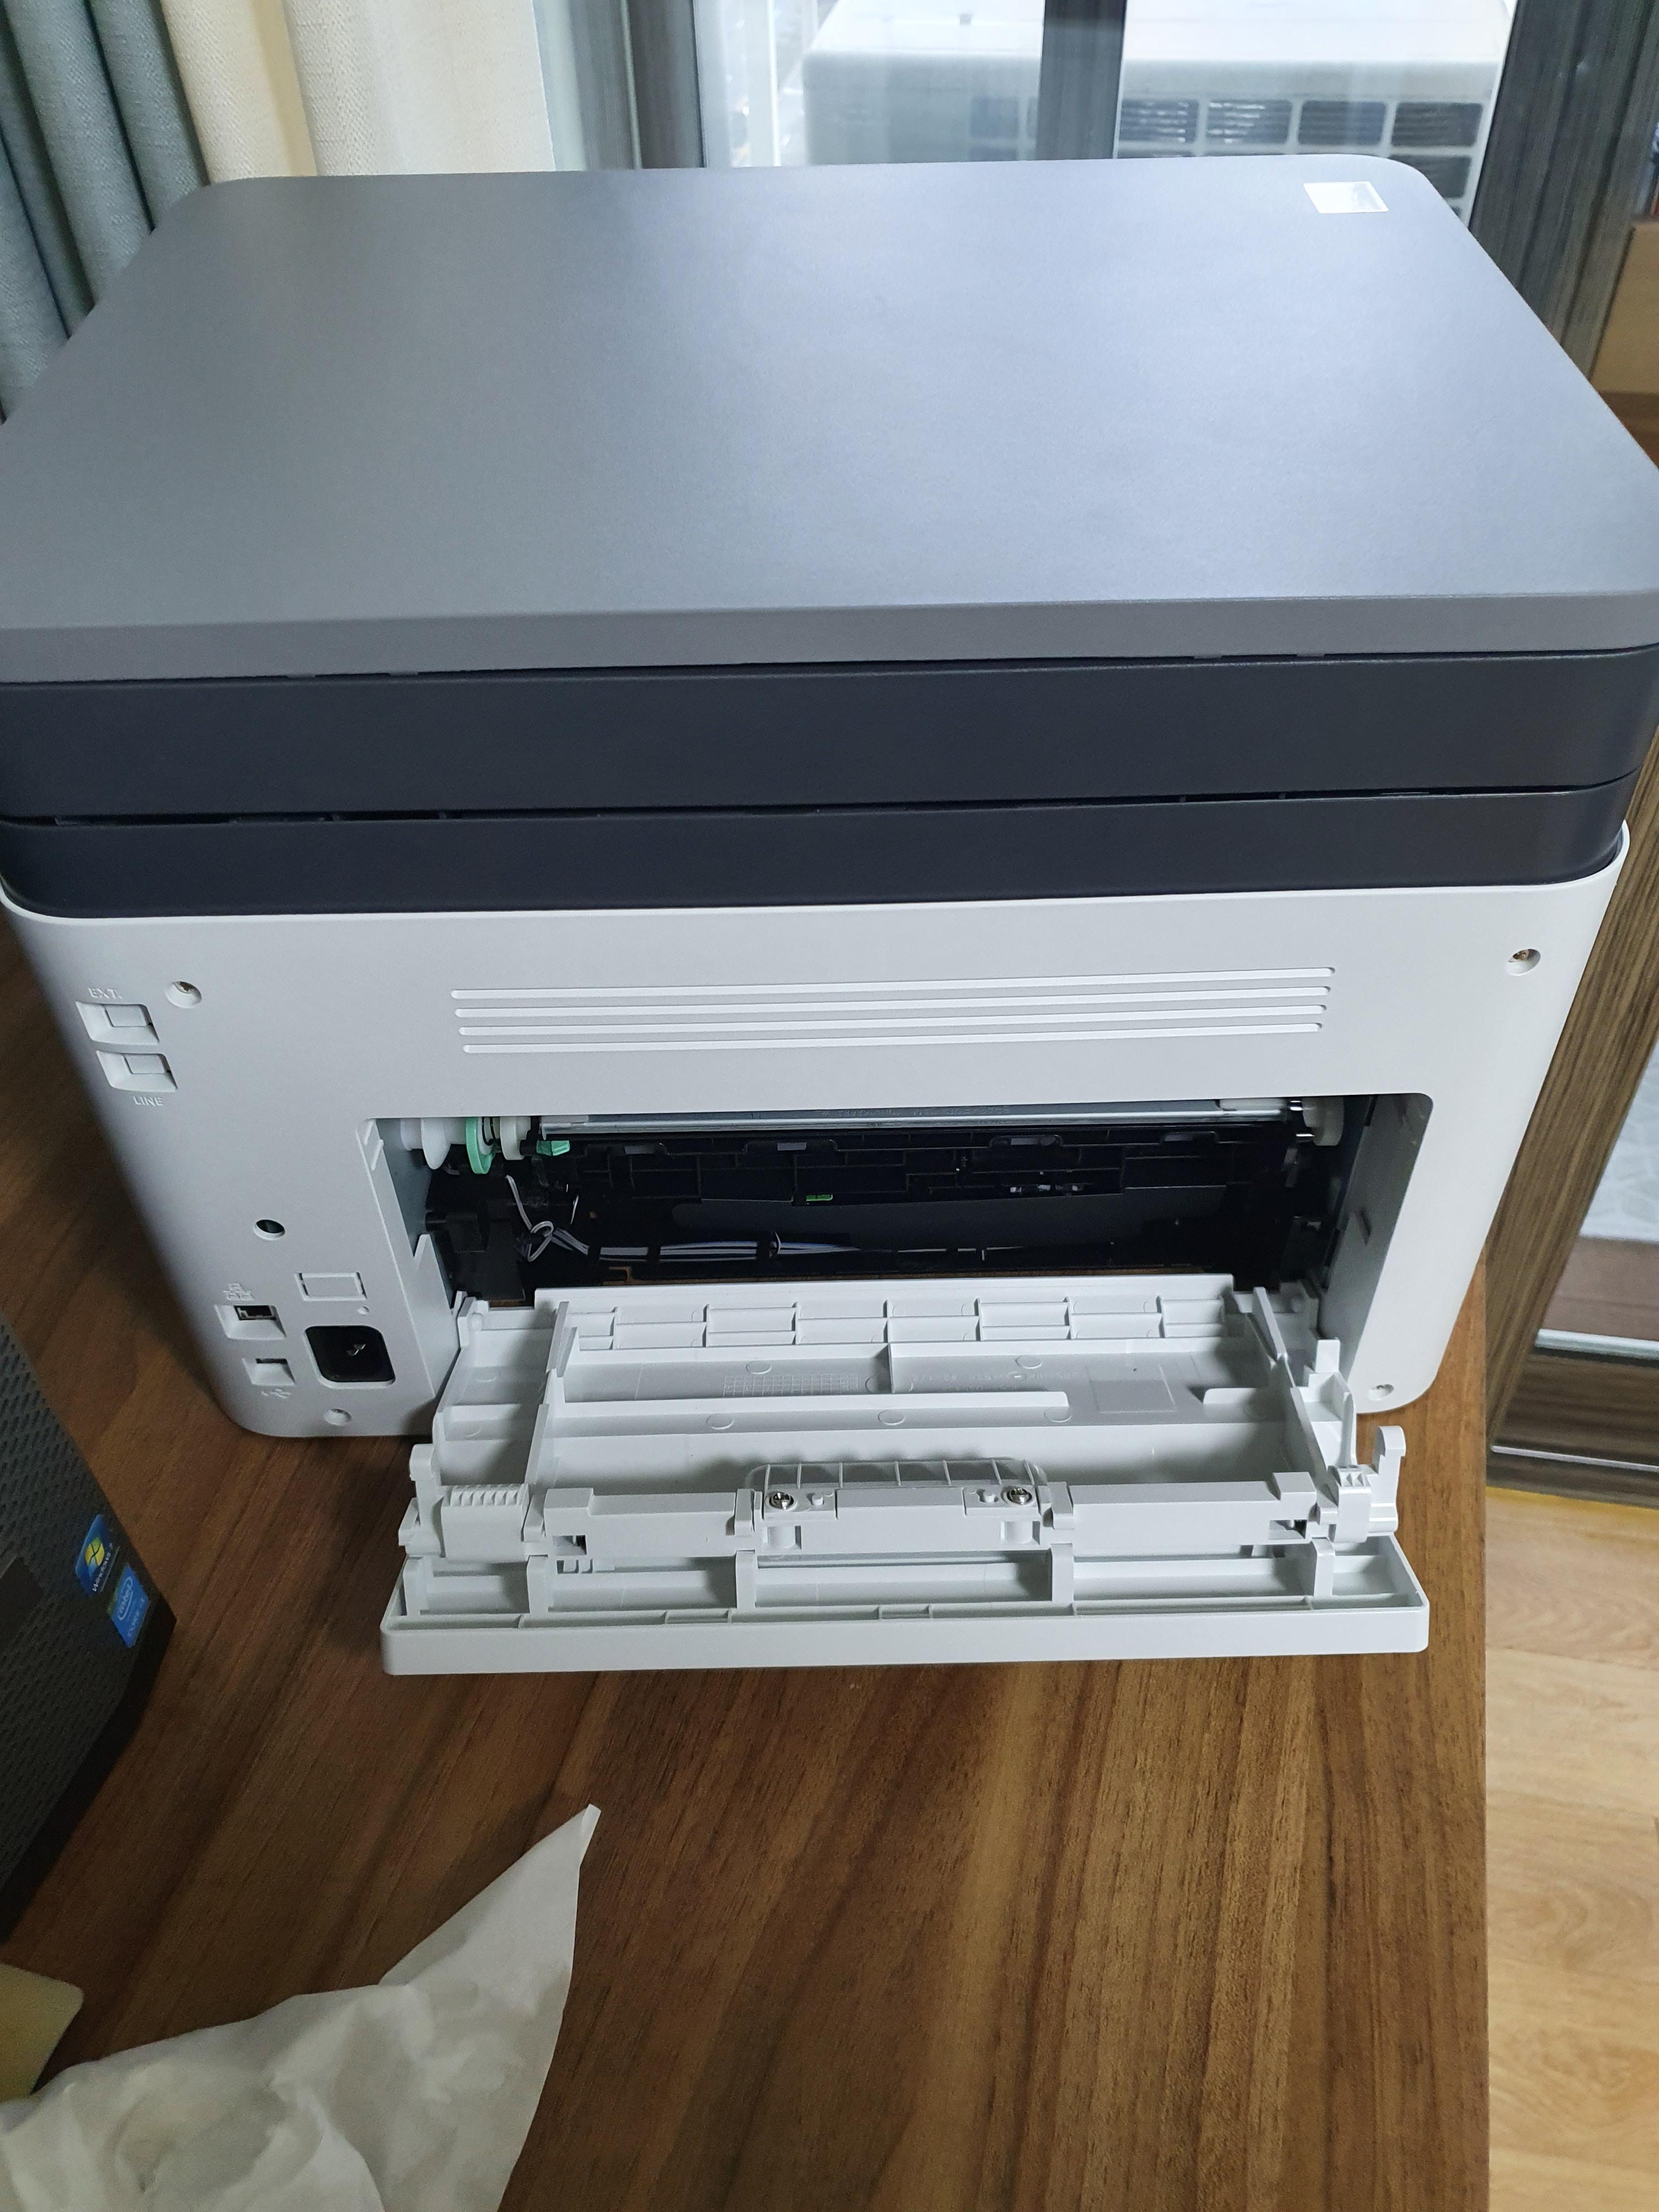 삼성 C563W레이저 프린터 복합기 종이 걸리면, 뒷패널 오픈 하면 이런 모습